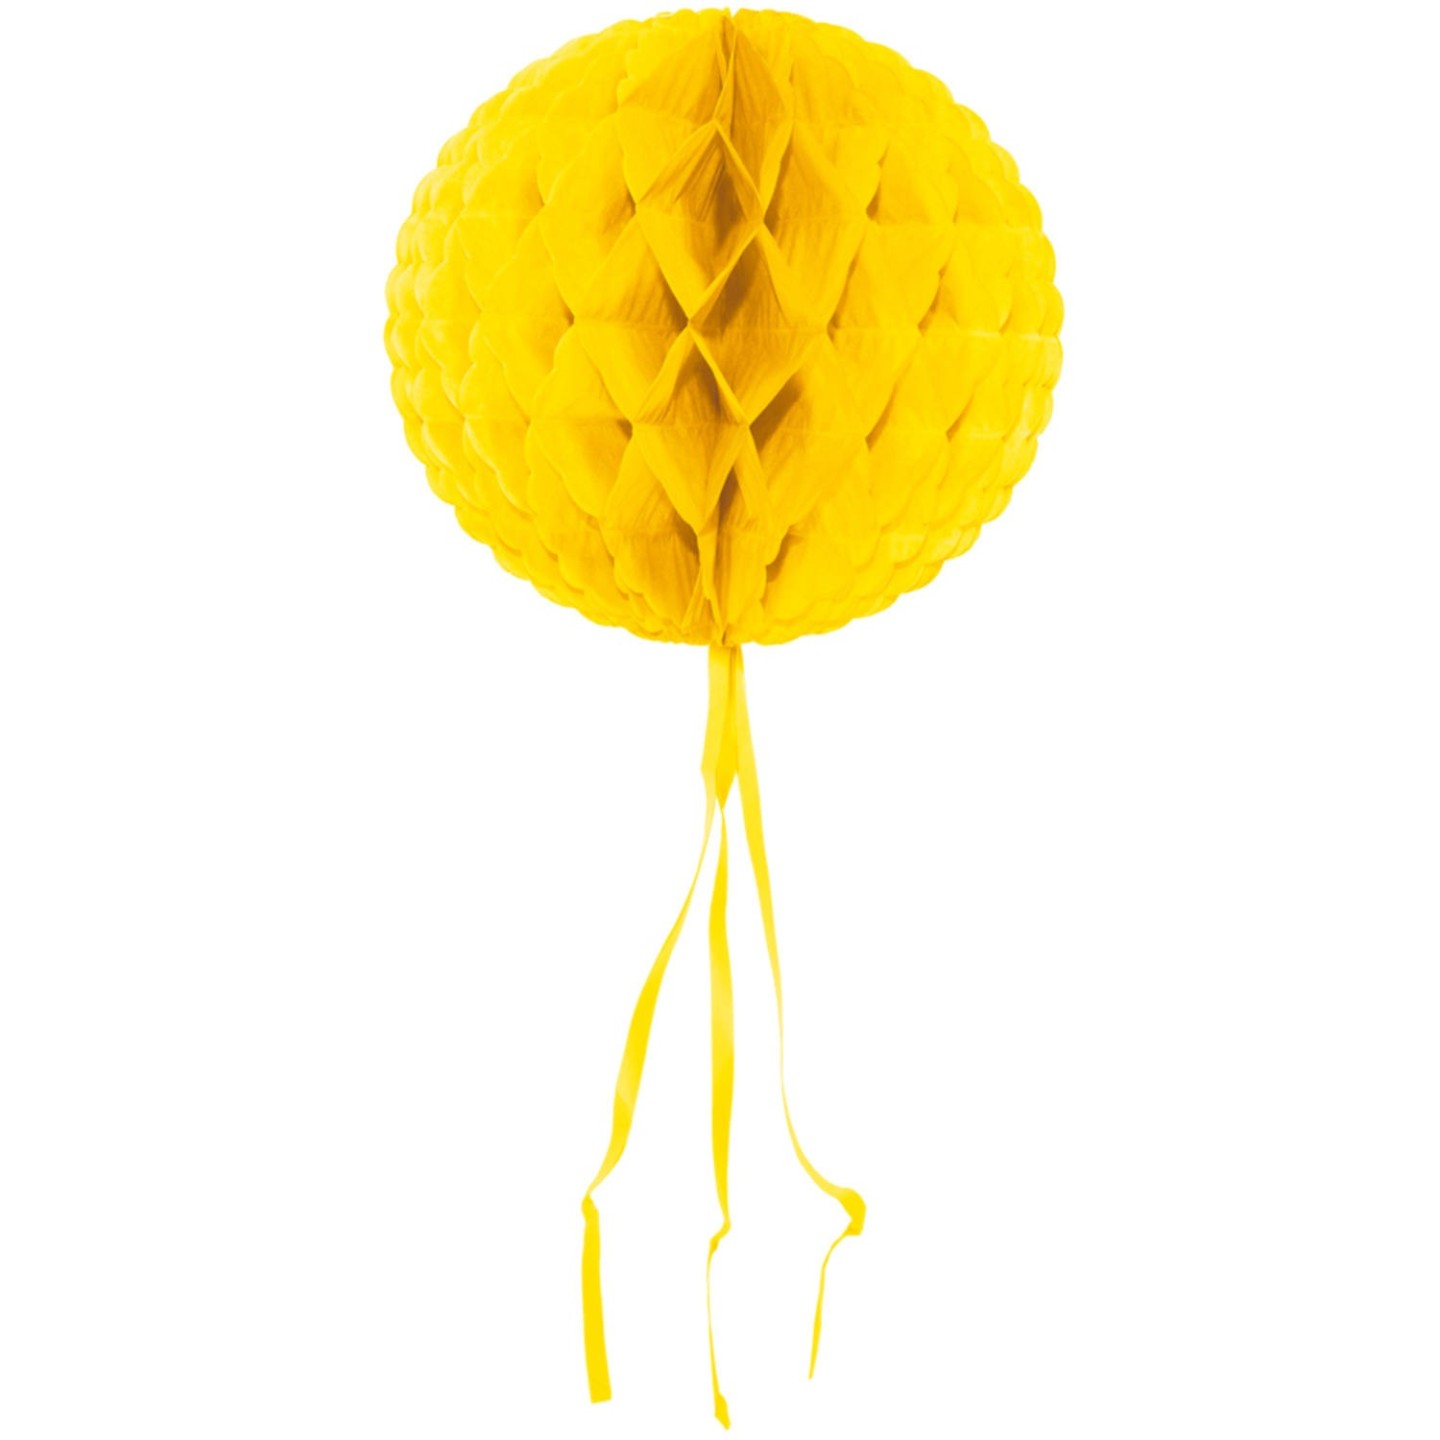 Verslaafde Expliciet heb vertrouwen Gele papieren honingraat bol - Honeycomb bal | Jokershop.be